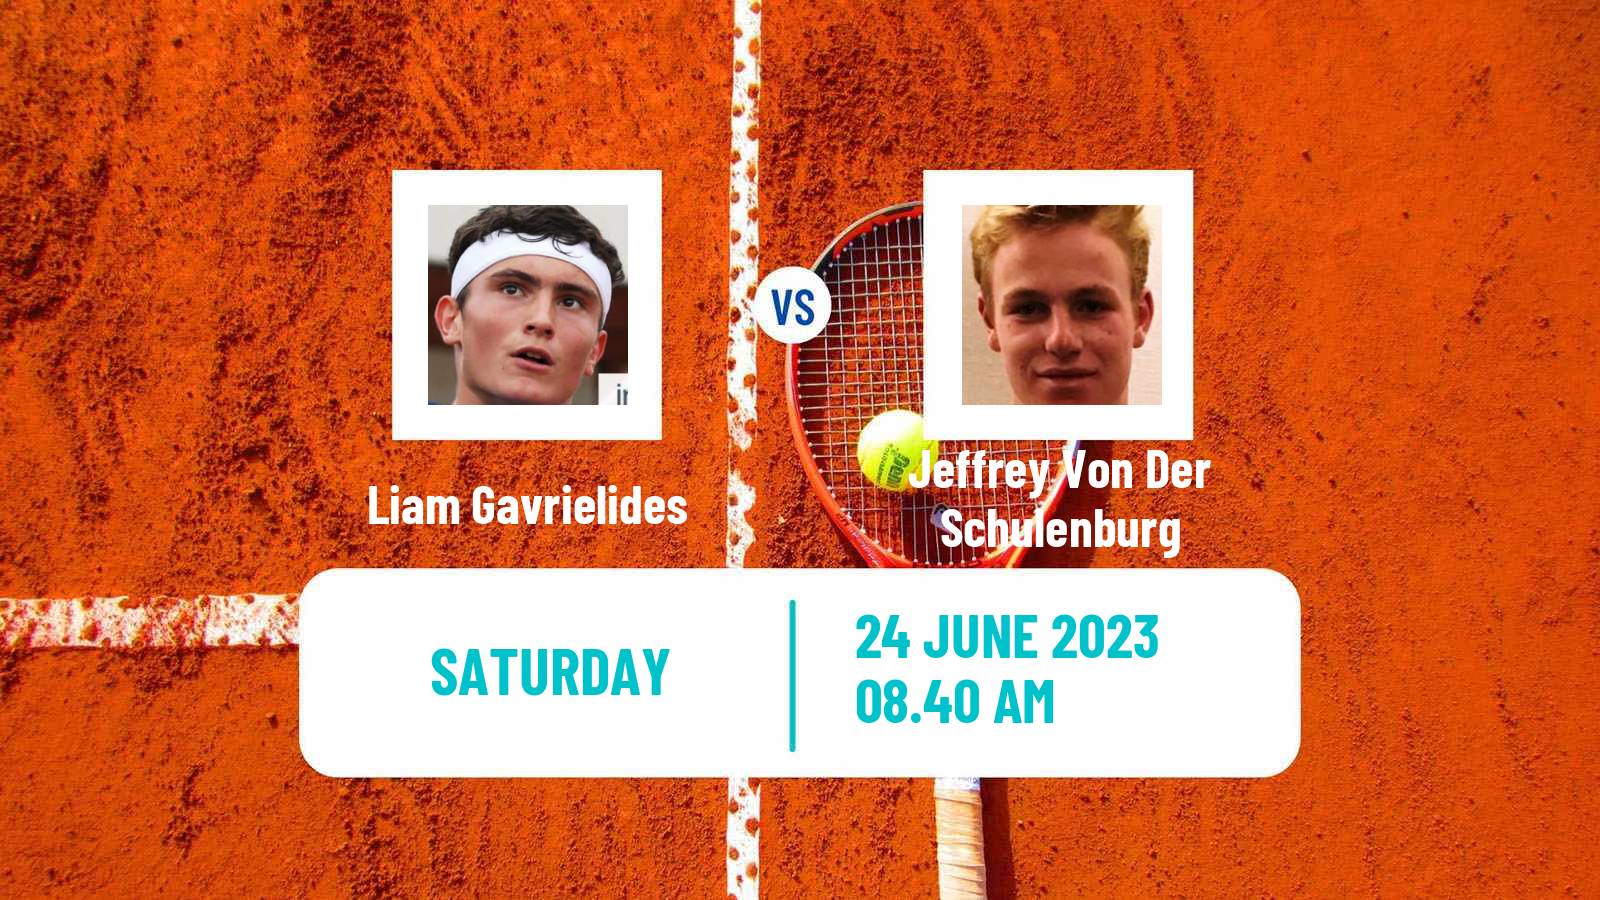 Tennis ITF M15 Saarlouis Men Liam Gavrielides - Jeffrey Von Der Schulenburg